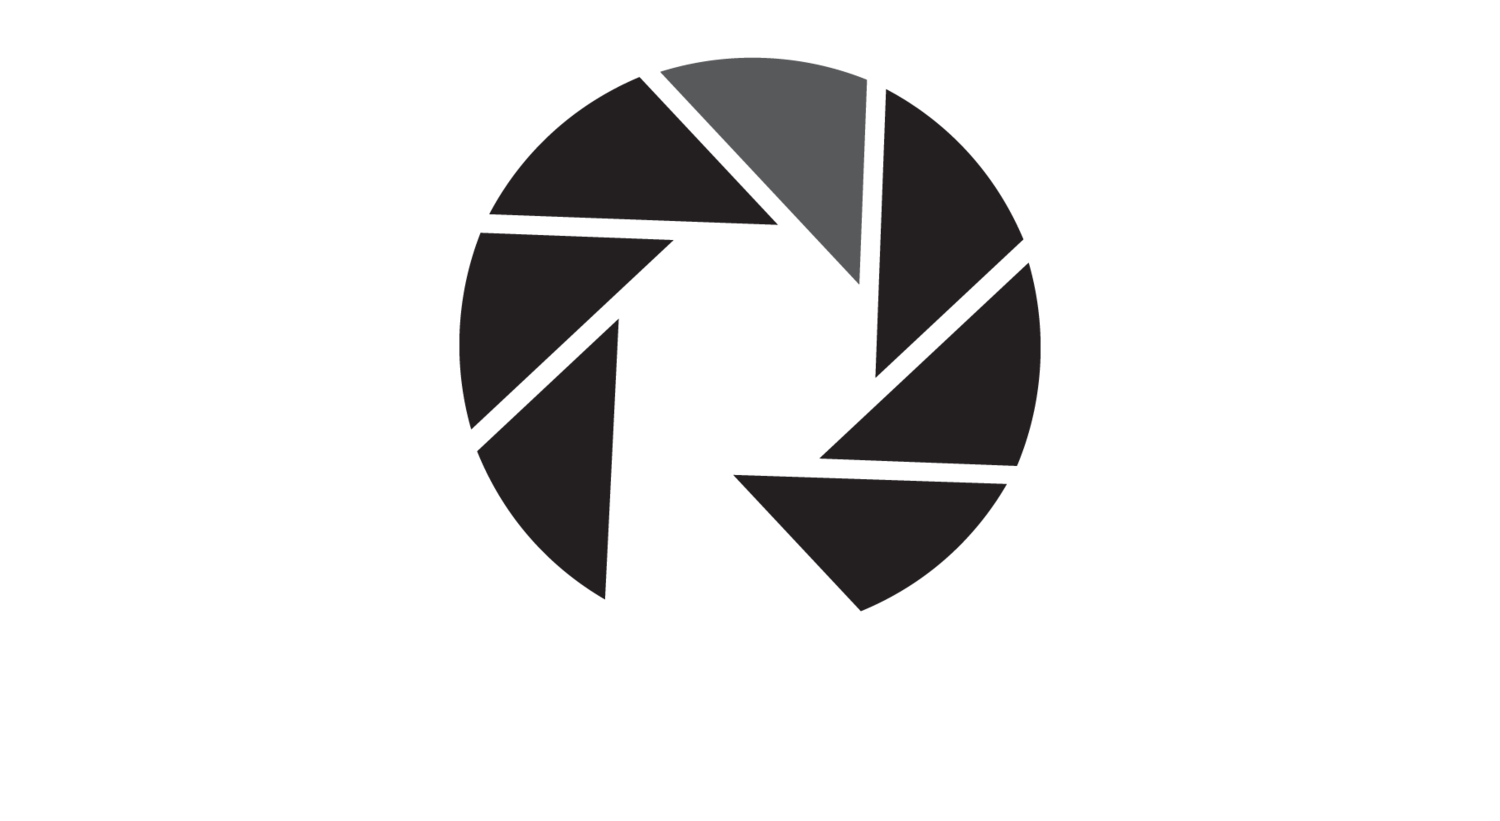  Roebuck photography 